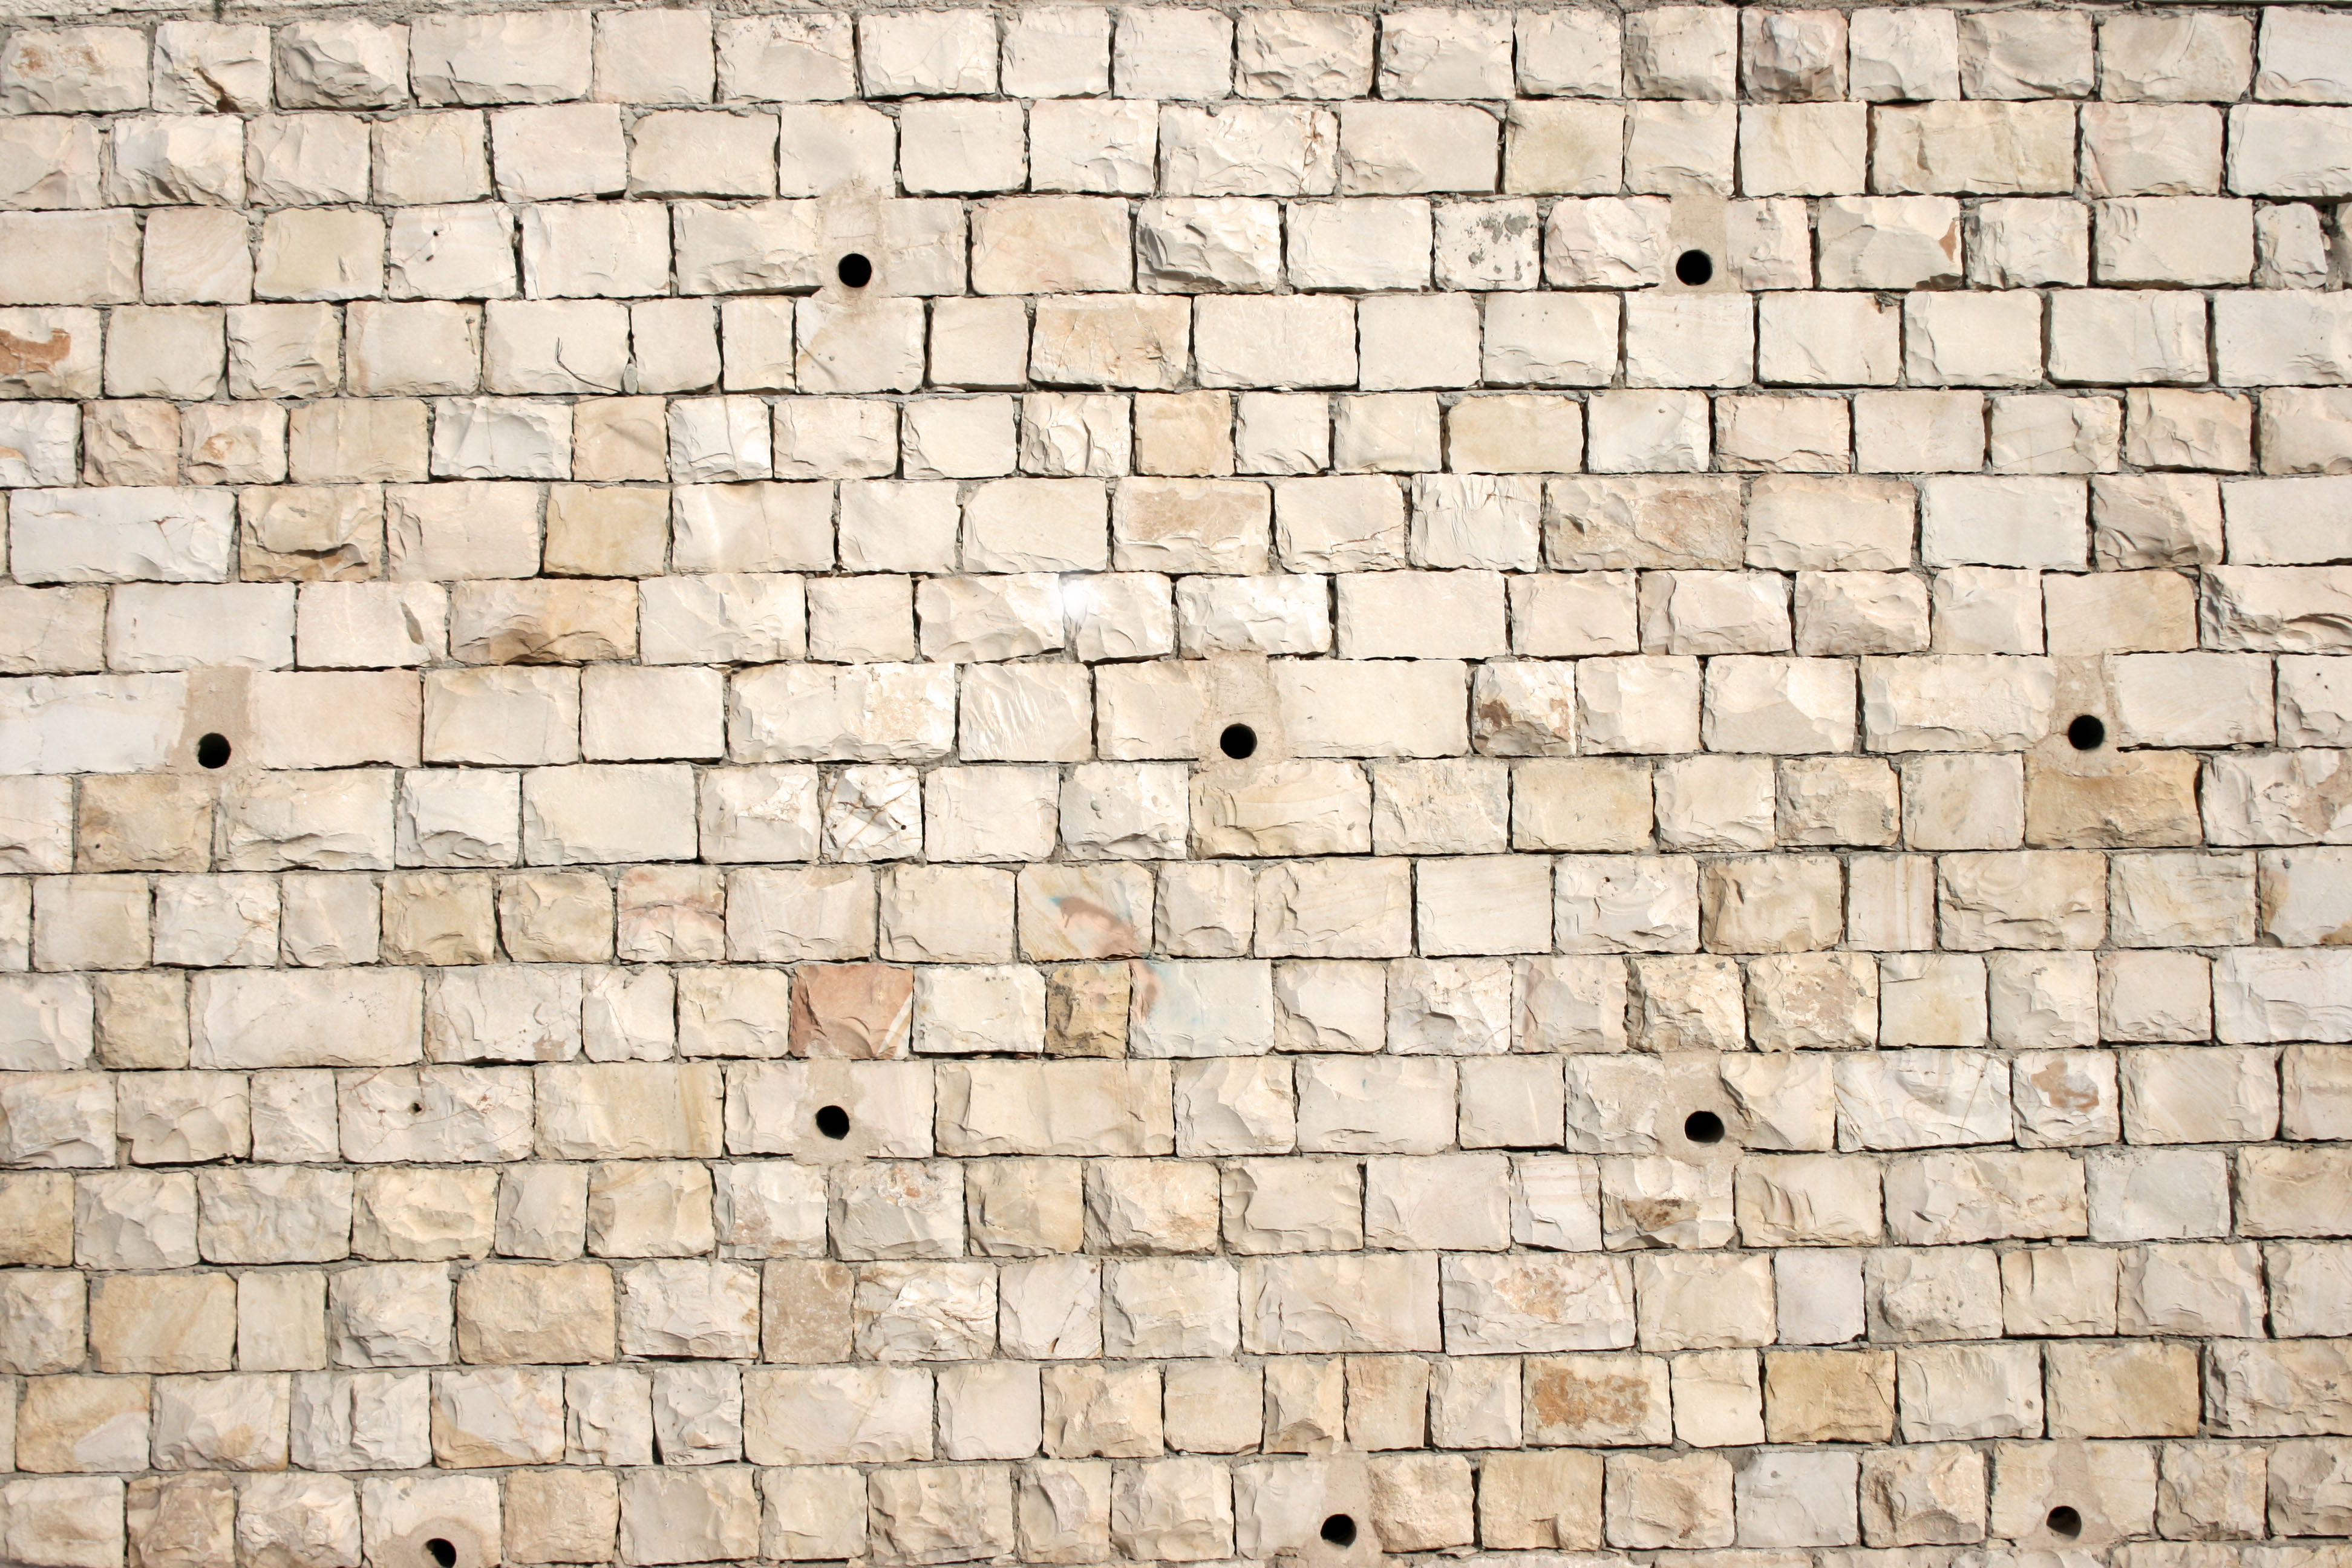 Bricks_0009.jpg